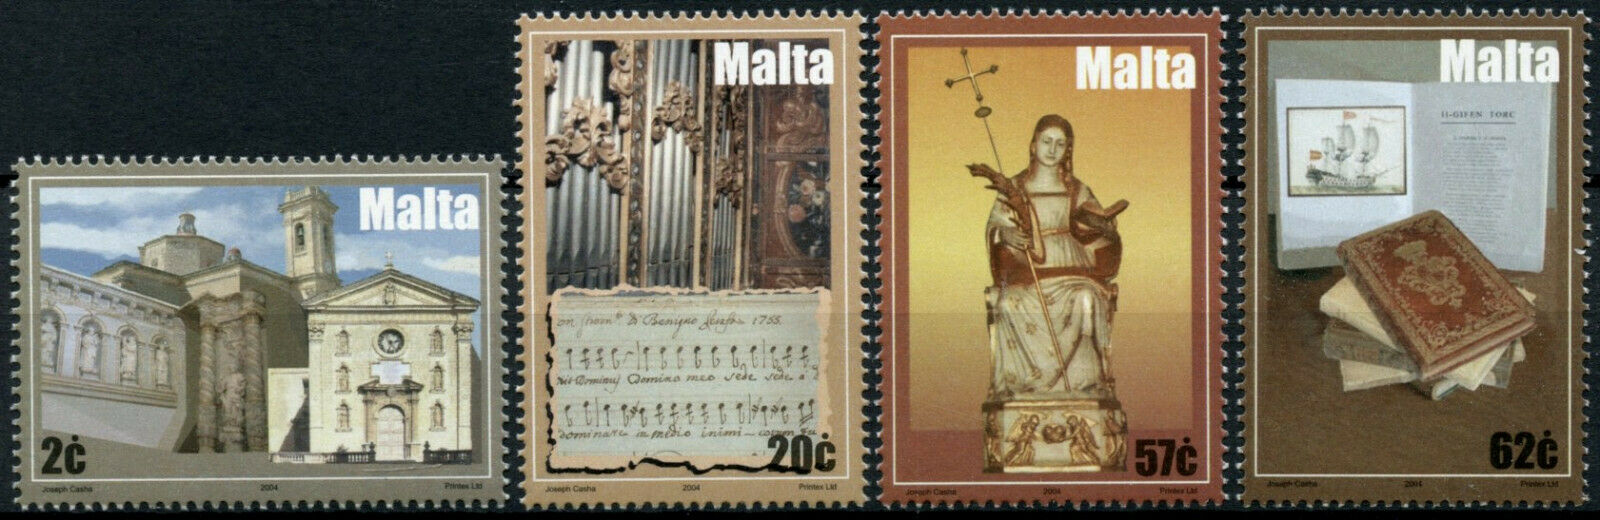 Malta Works of Art Stamps 2004 MNH Cathedrals Artefacts Organs Saints 4v Set